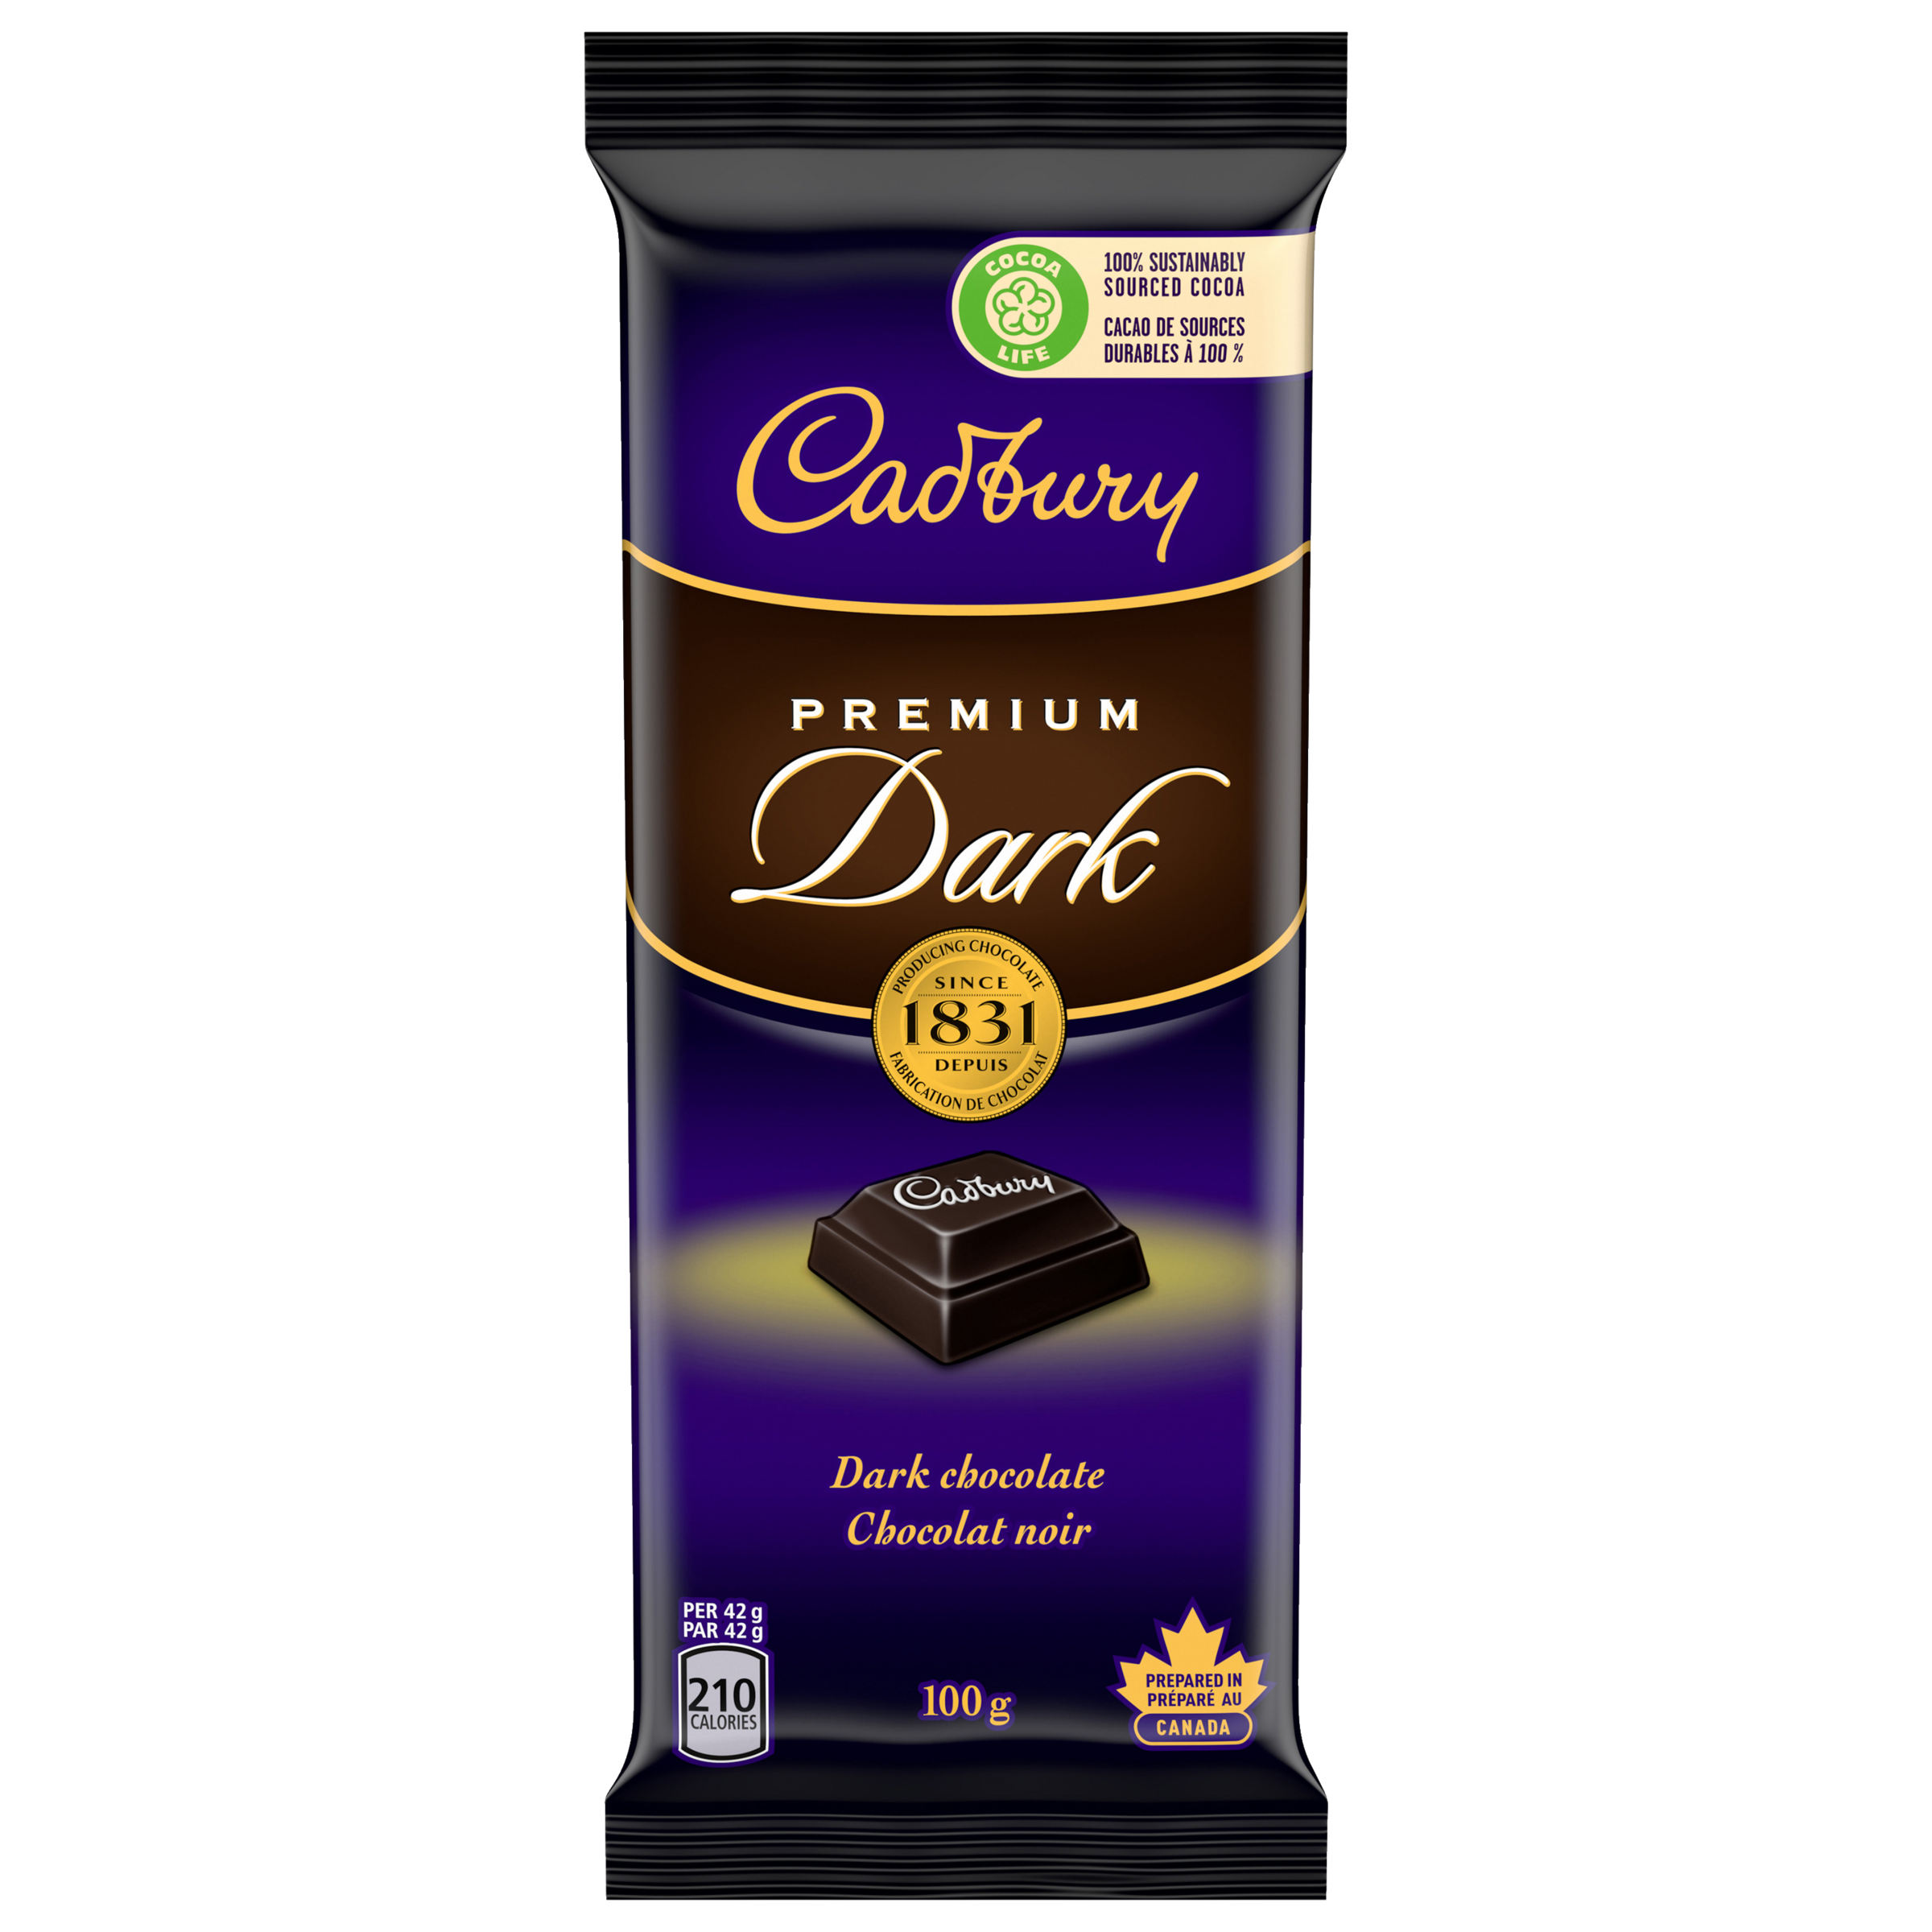 Cadbury Premium Dark, Dark Chocolate Bars, 100 G-1